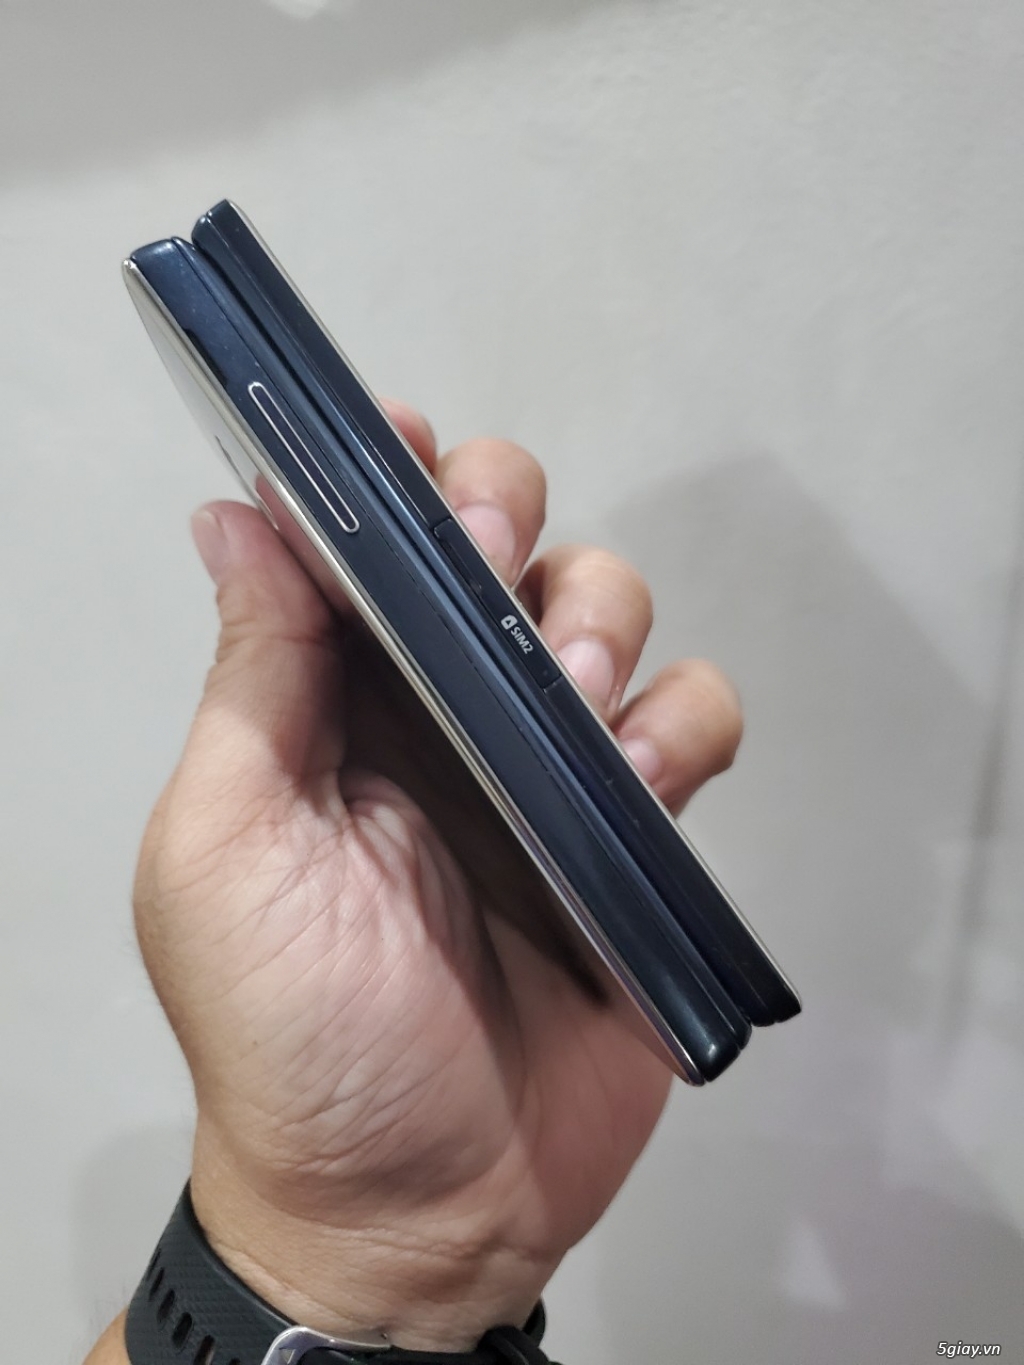 Hàng độc: Samsung G9198 nắp gập 2 màn hình đời cuối màu xanh siêu đẹp - 11